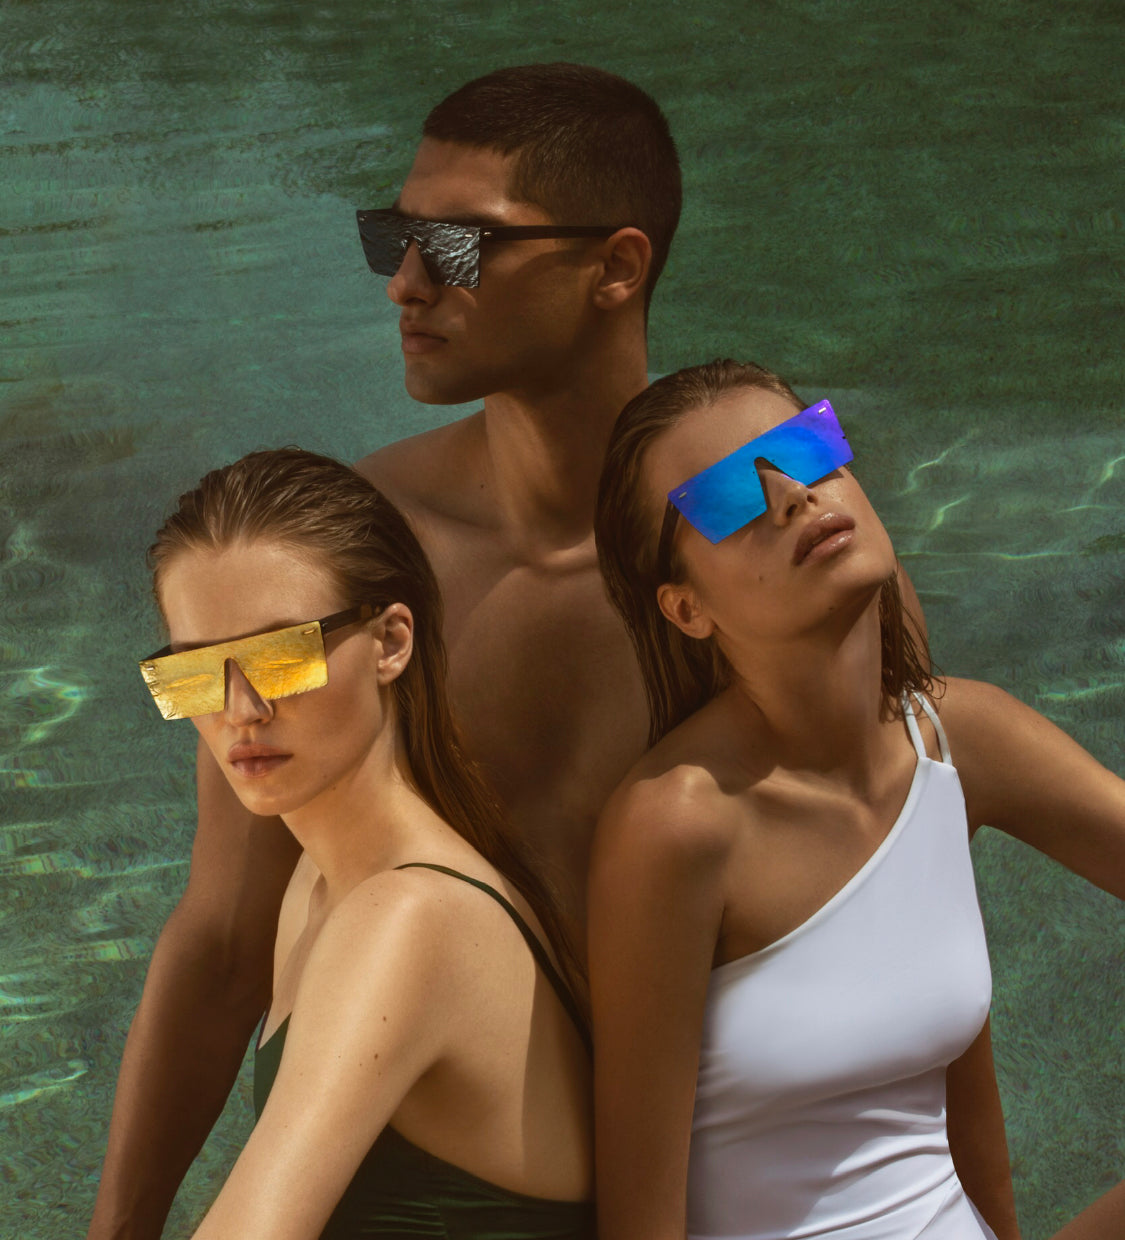 The De-sunglasses Moroccan campaign